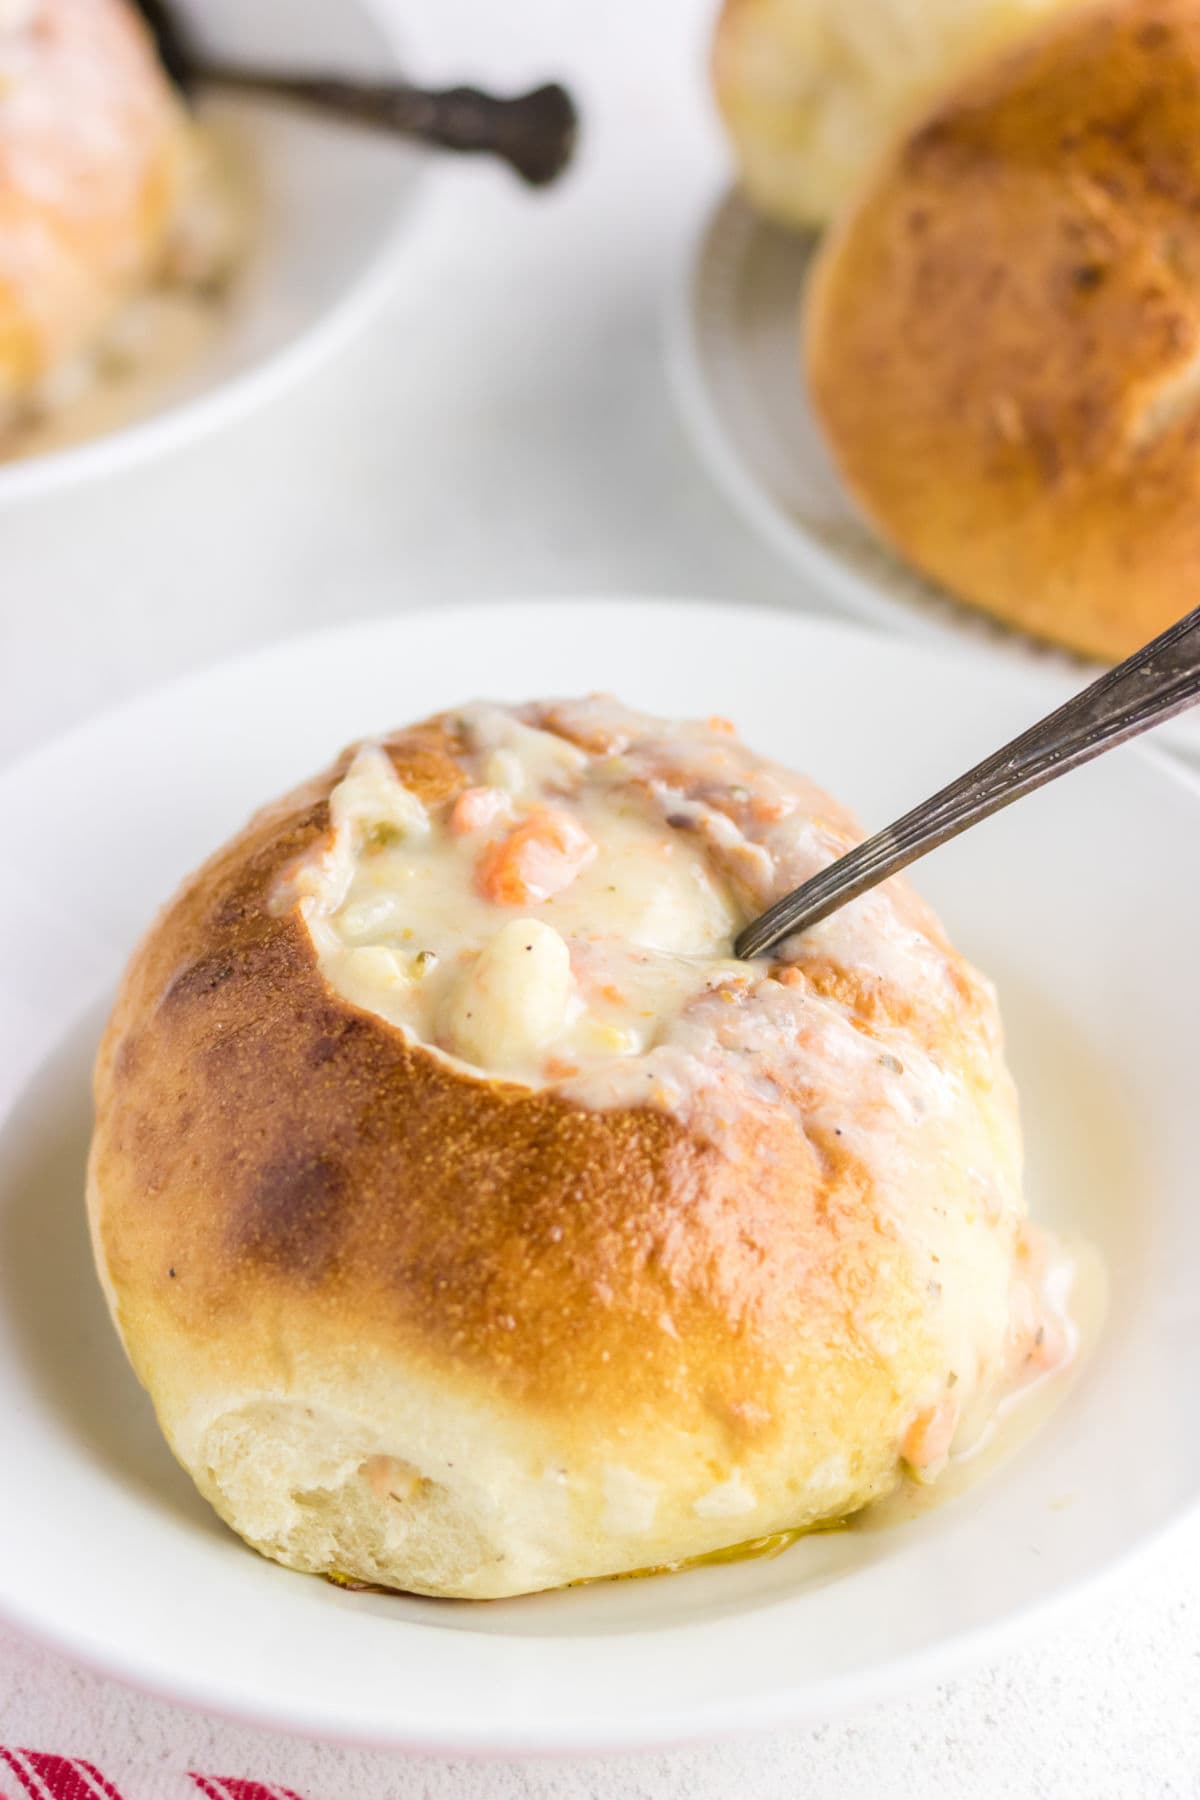 Italian Bread Bowls – Baked by Rachel